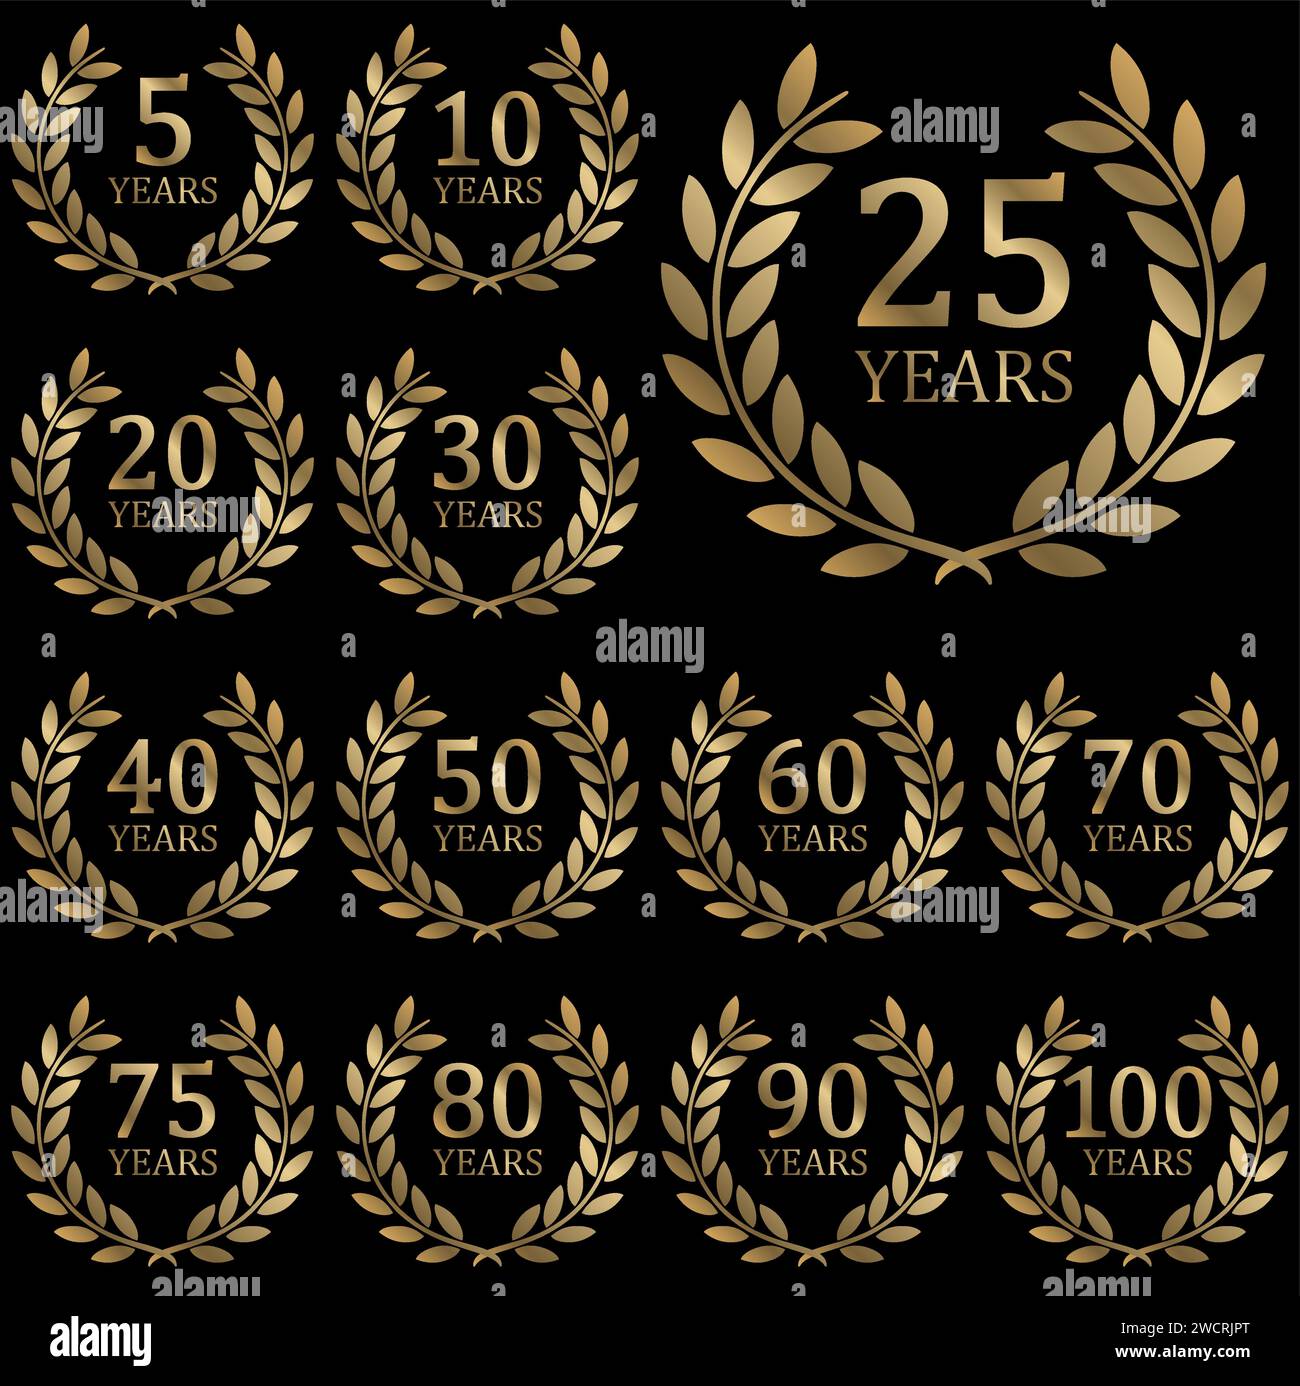 fichier vectoriel eps avec collection de couronne de laurier dorée sur fond noir contexte de la réussite ou du jubilé d'entreprise avec le texte 5 à 100 ans Illustration de Vecteur